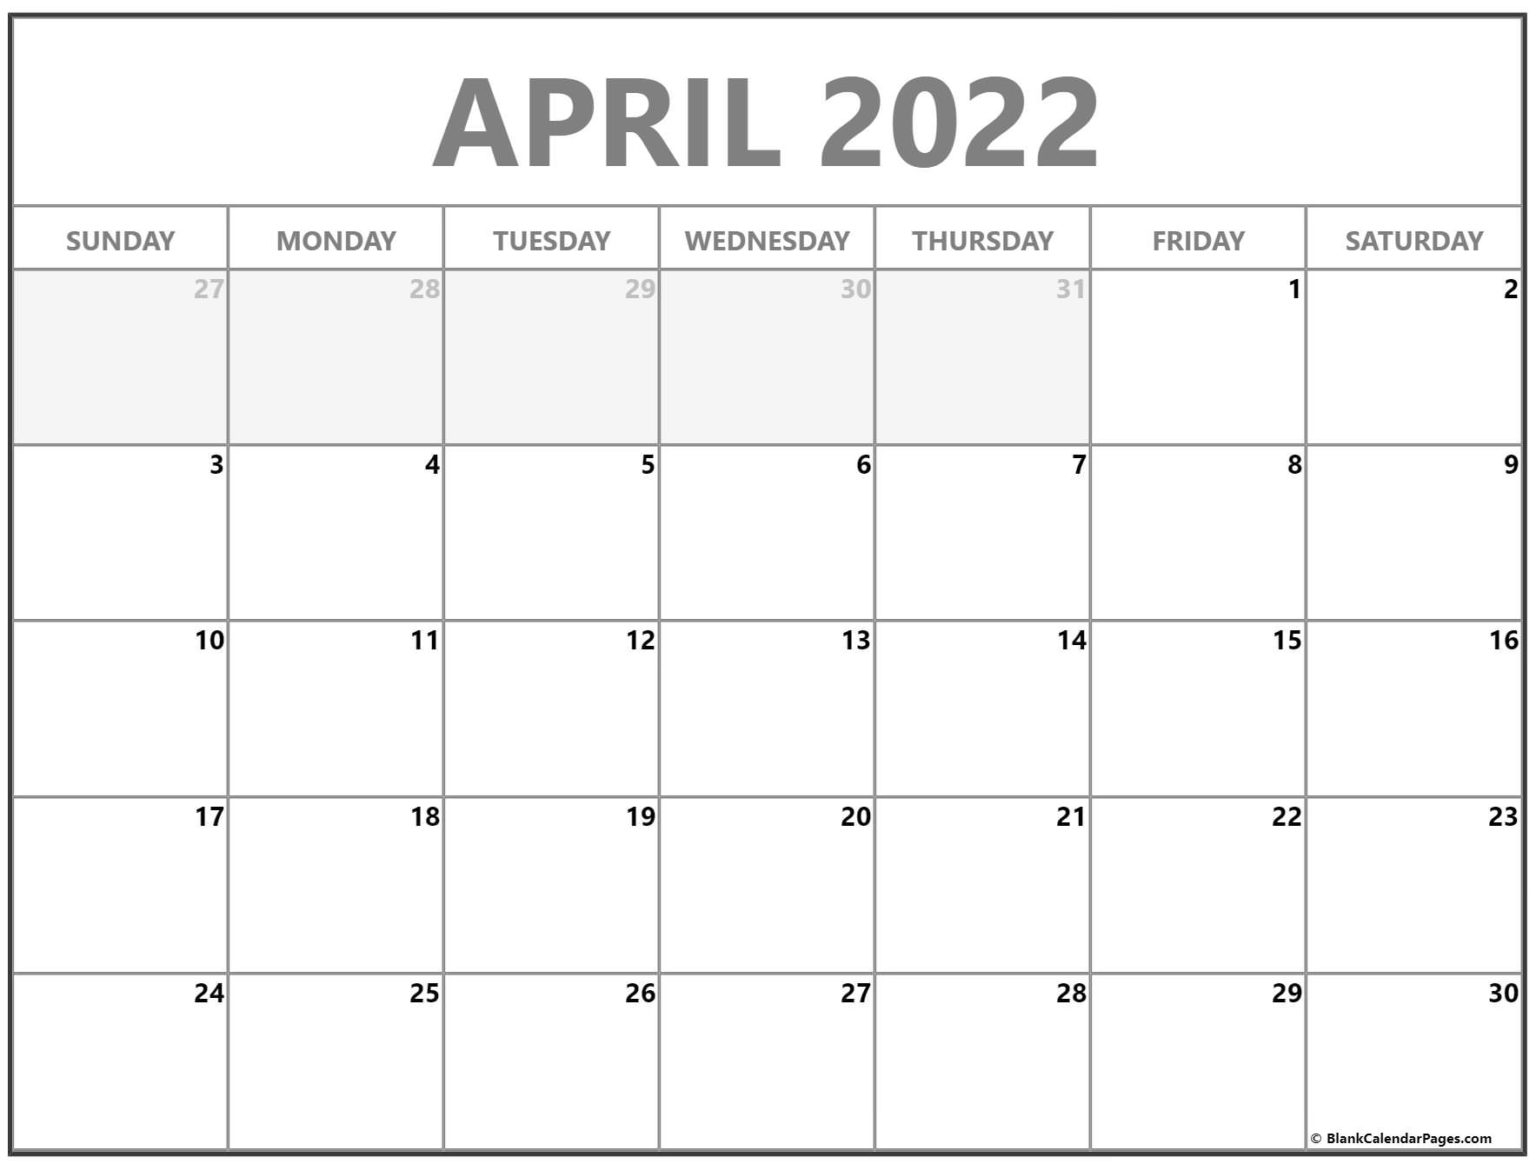 Get Calendar April 30 2022